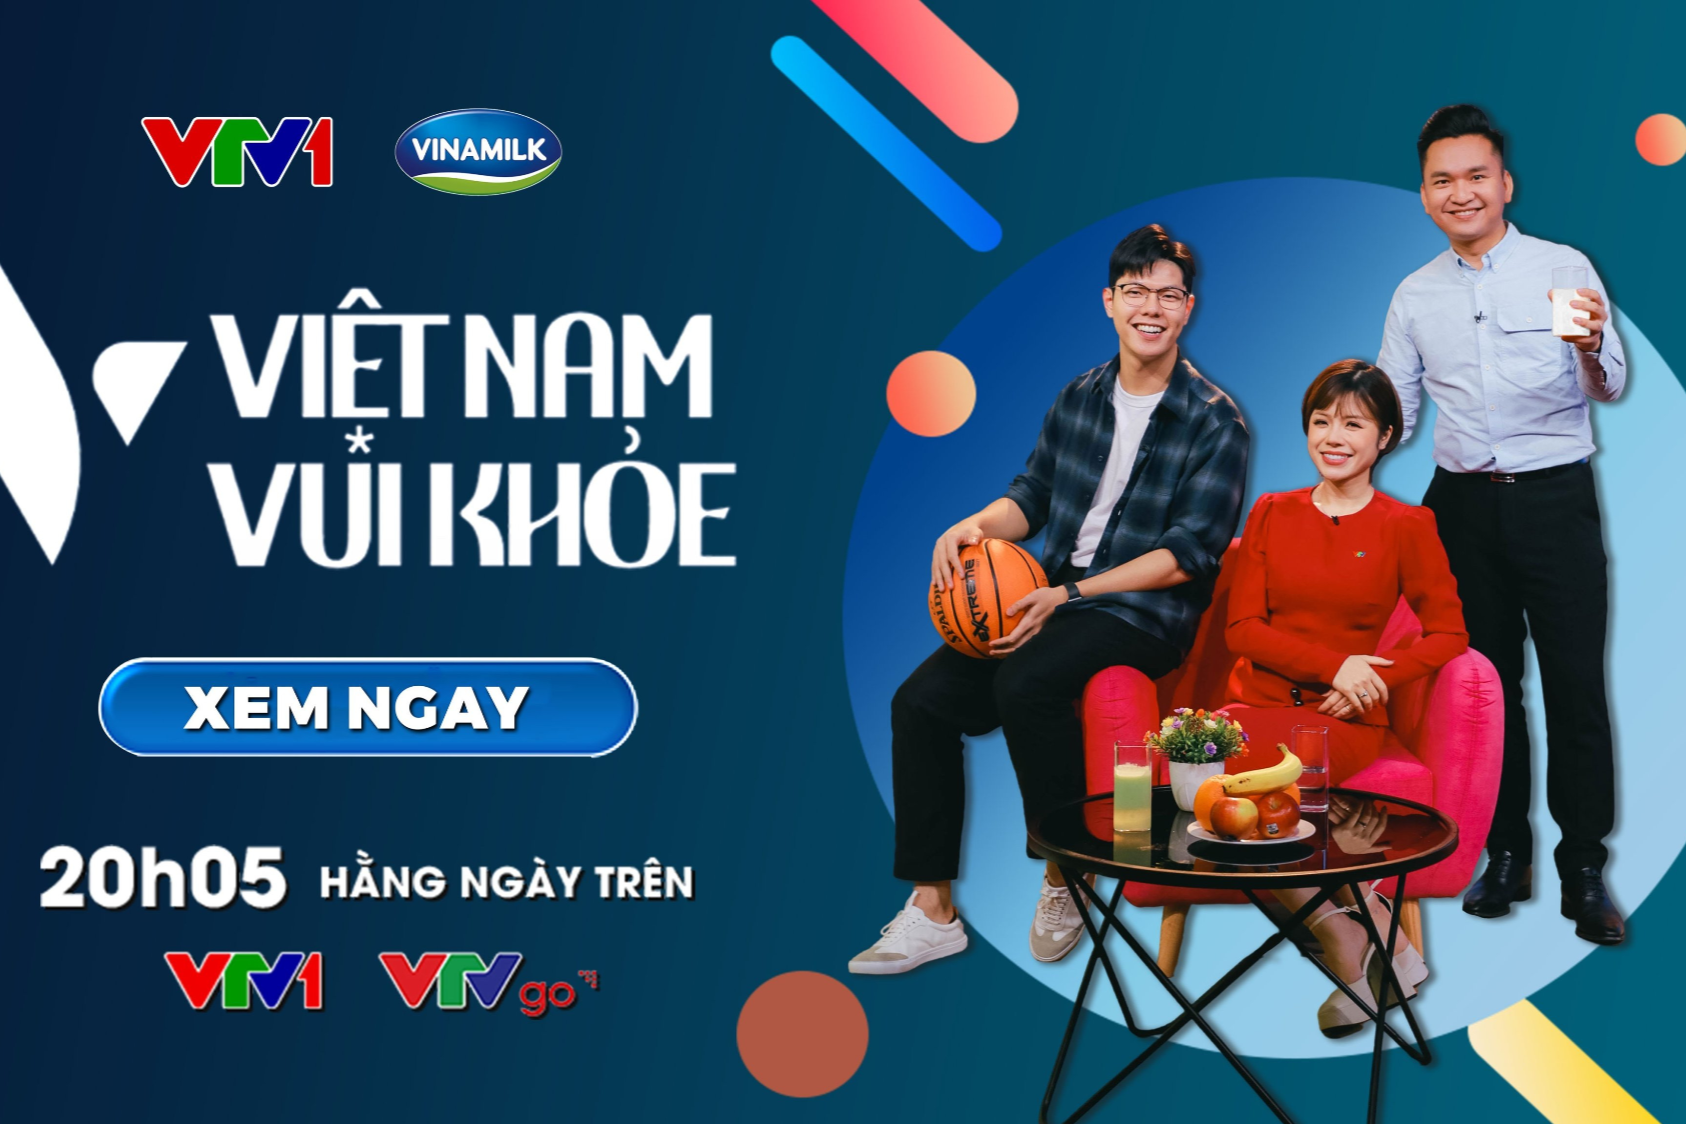 3 điểm nhấn tạo sức hút của chương trình ‘Việt Nam vui khỏe’